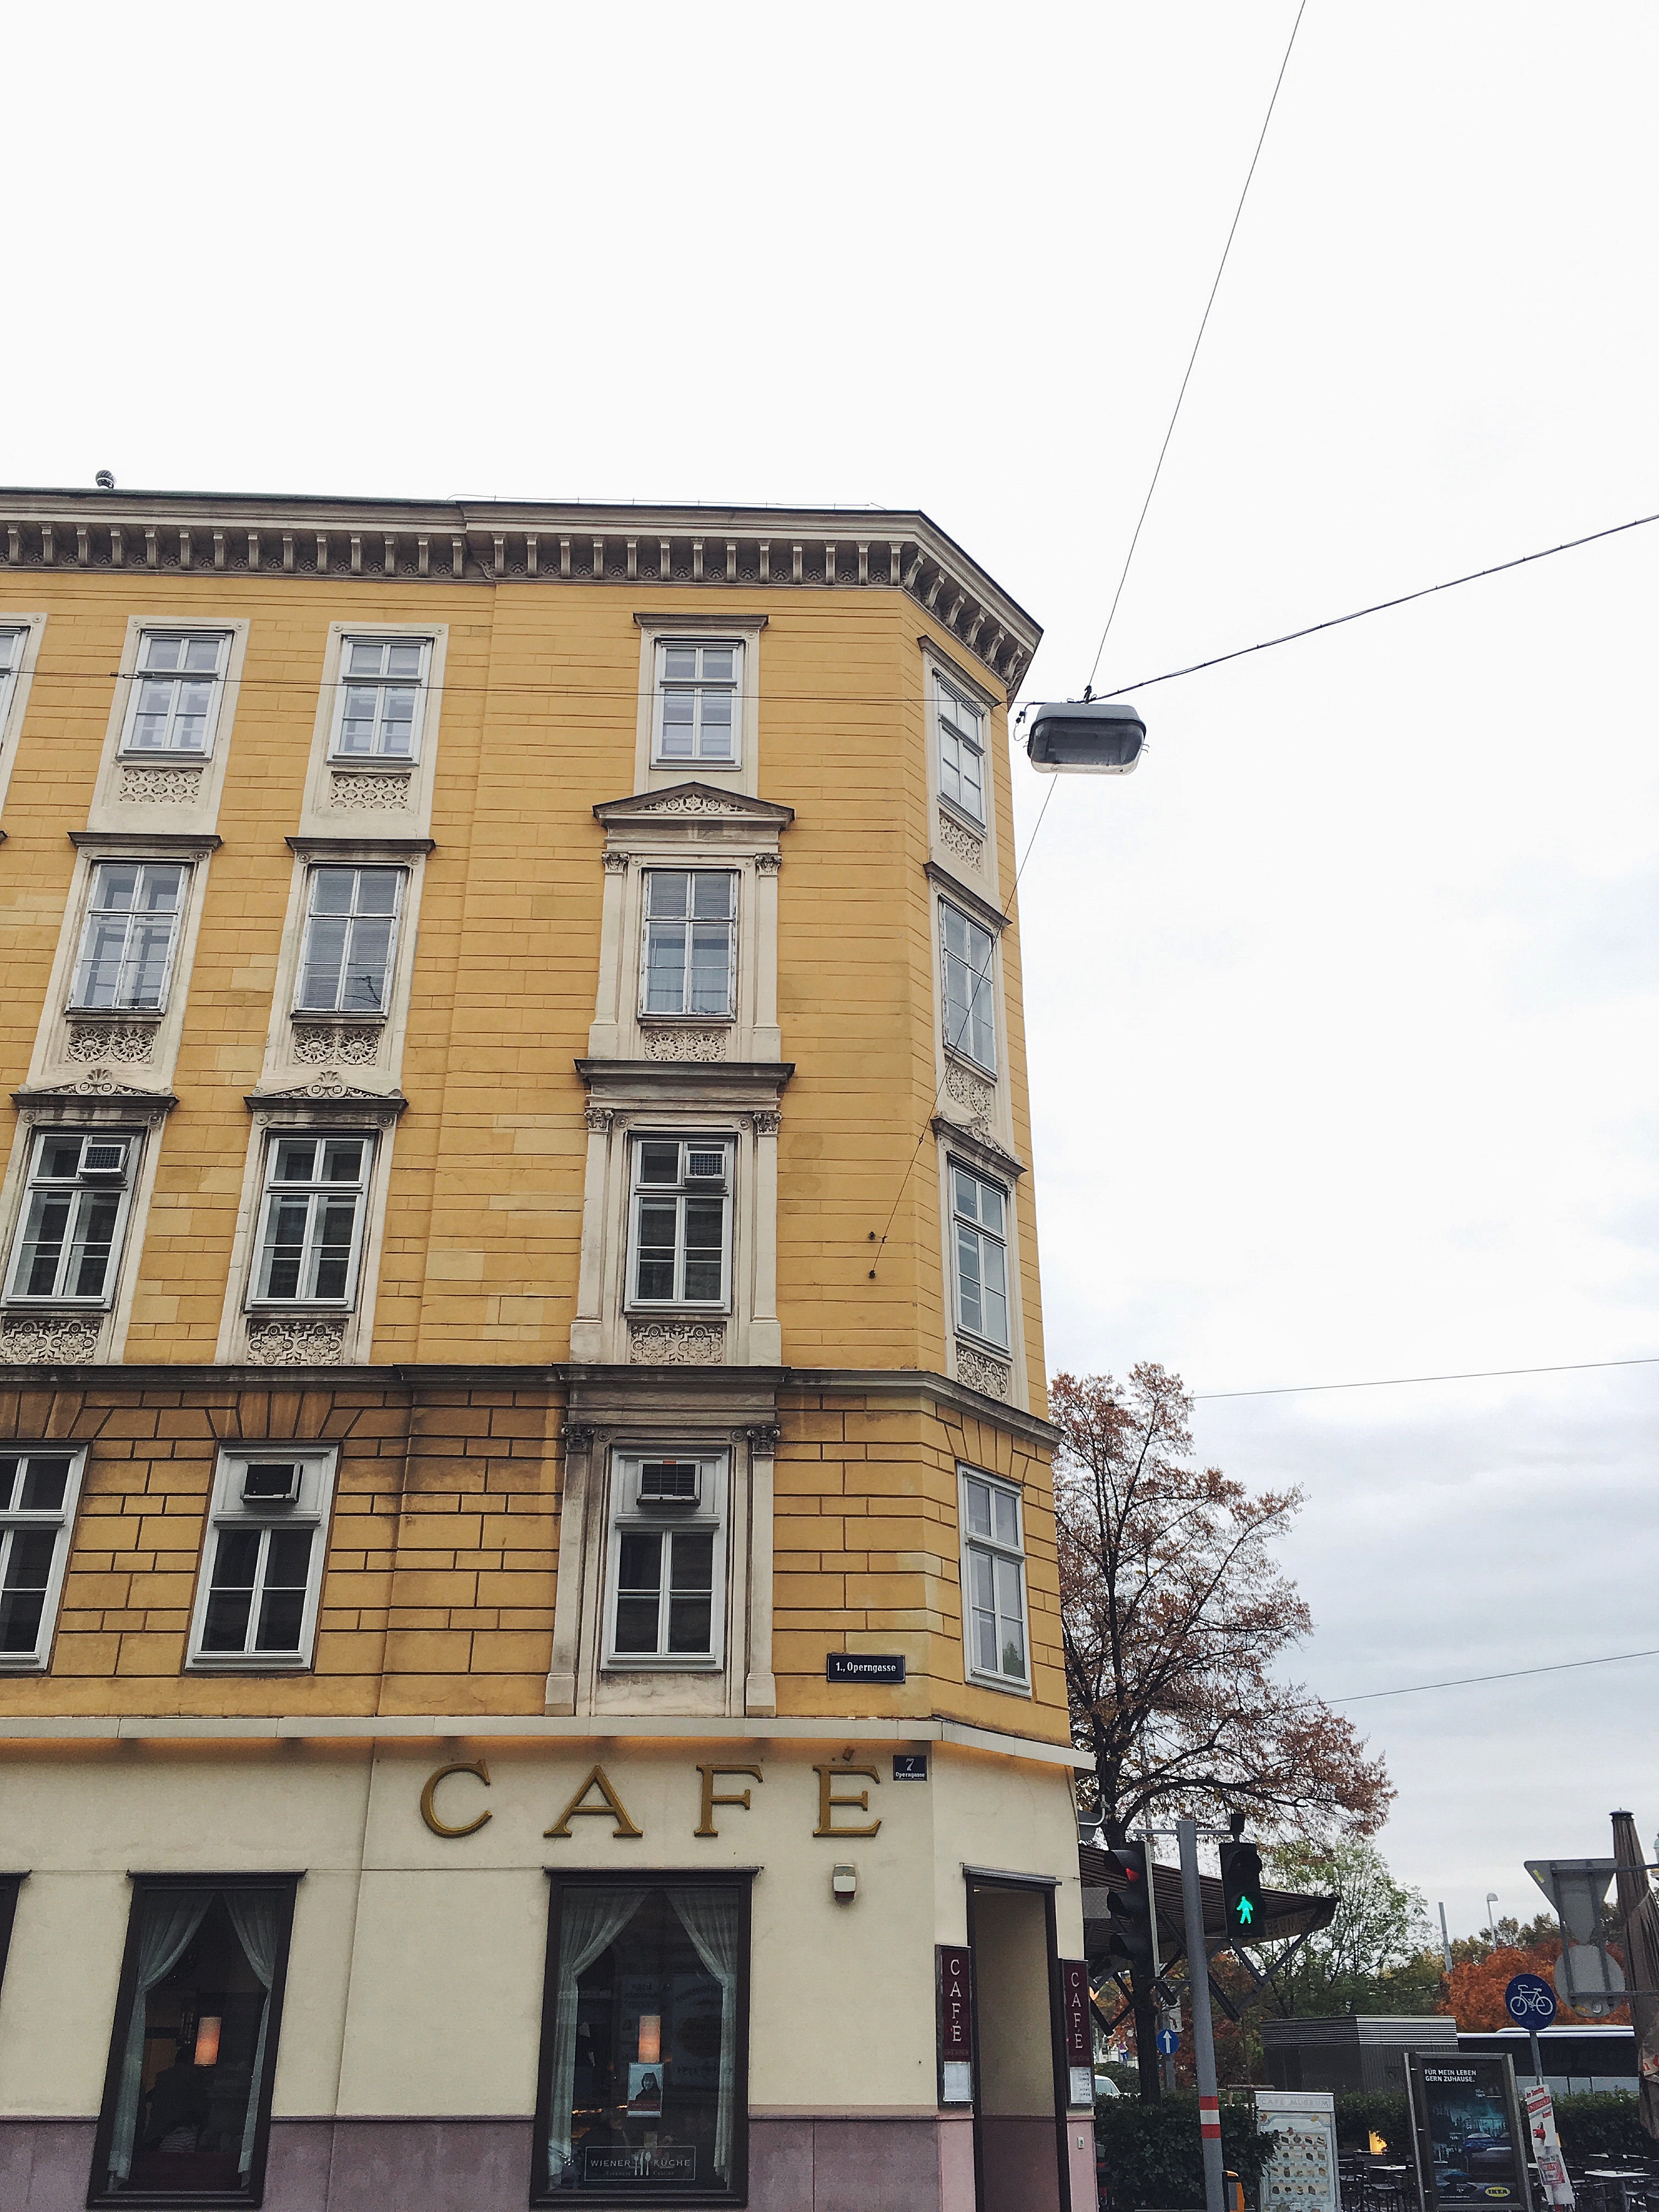 Café - Vienna